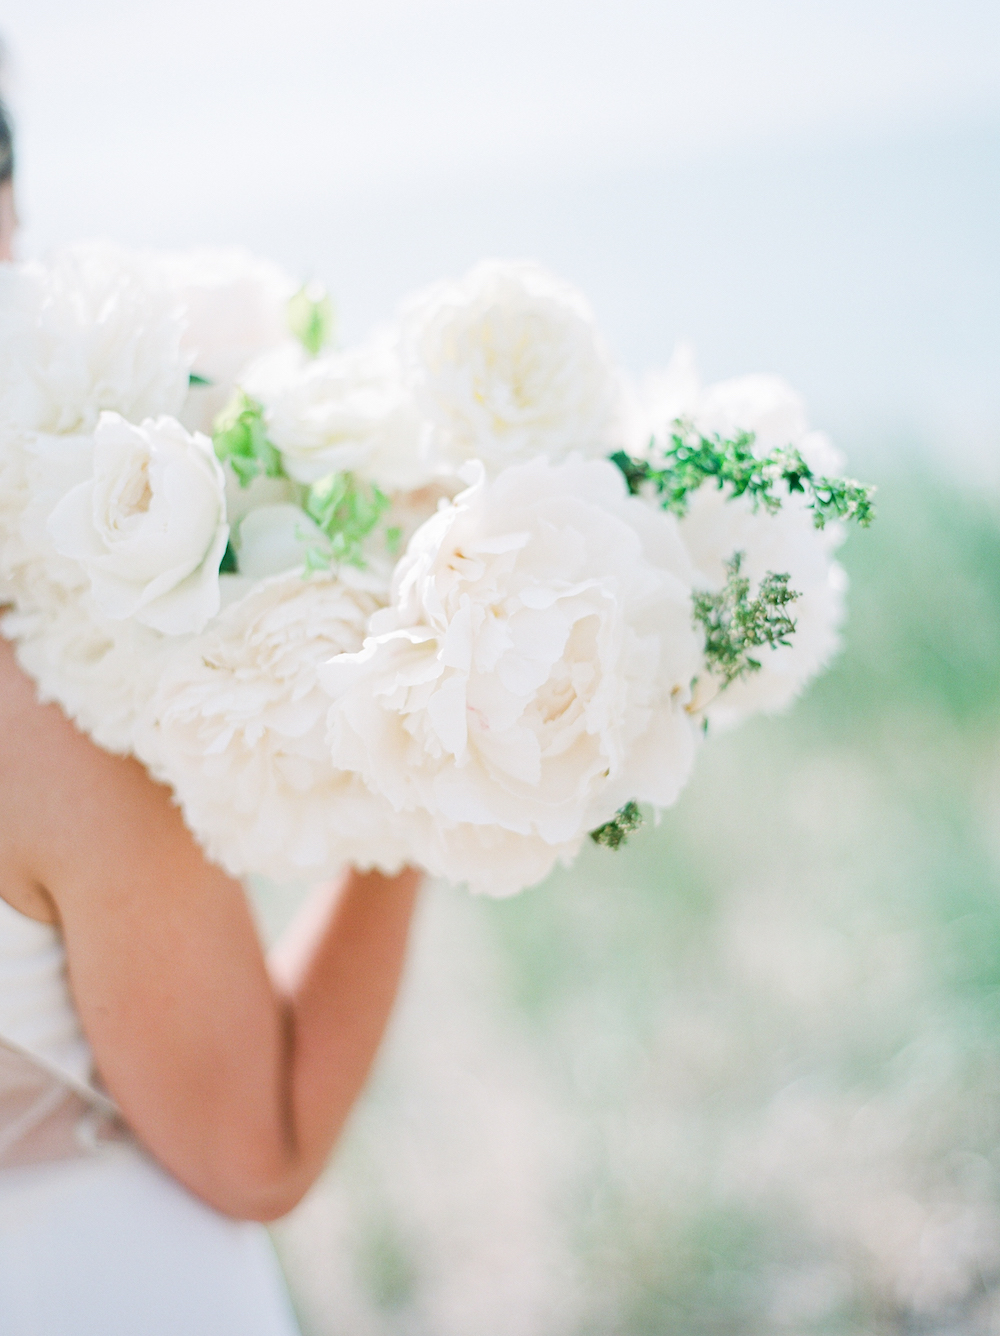 A bridal bouquet